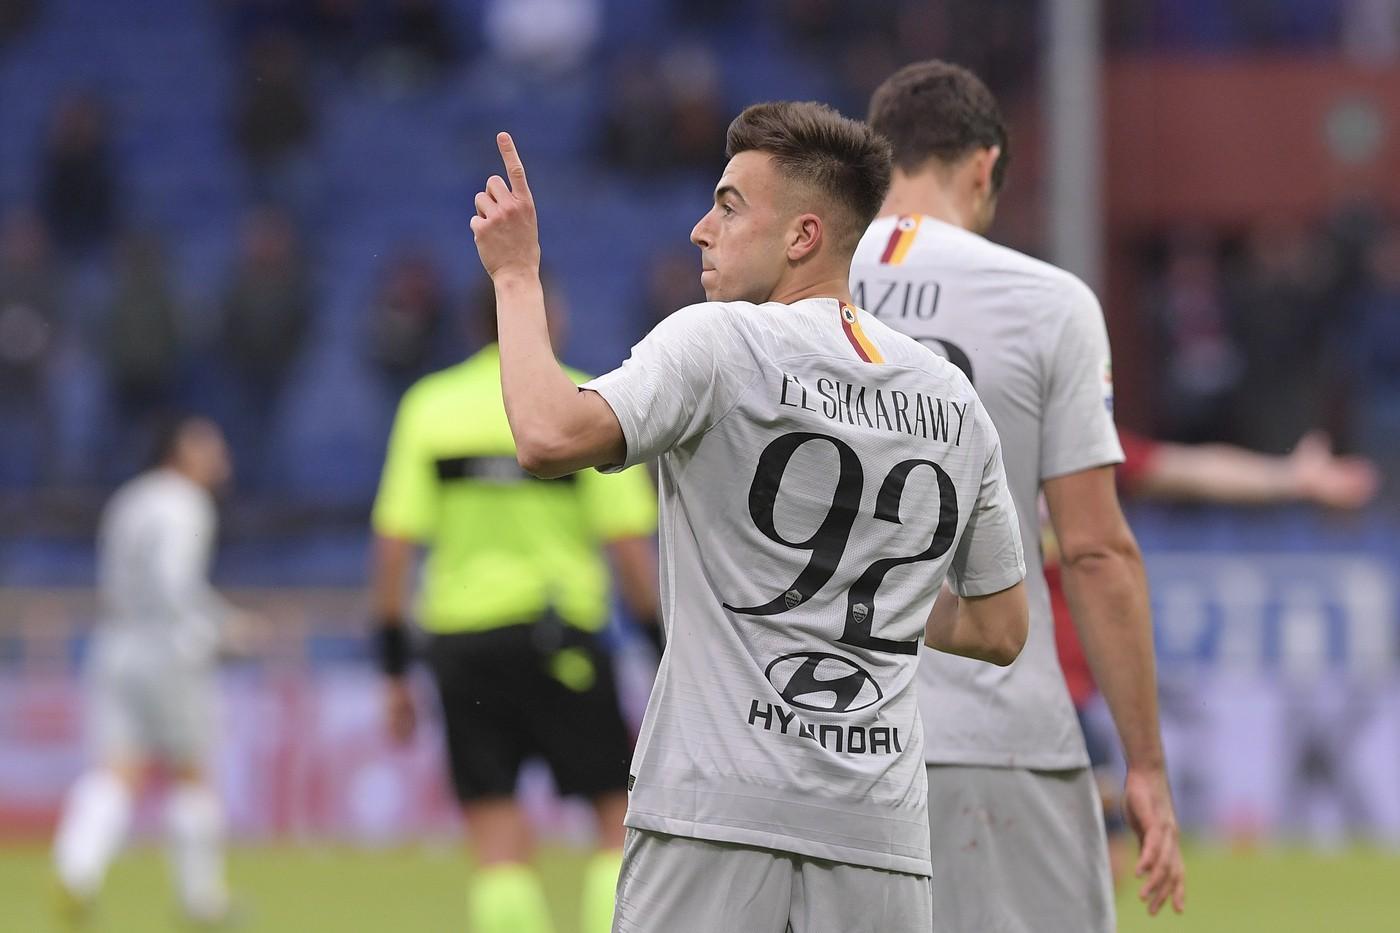 El Shaarawy esulta dopo il gol al Genoa del 5 maggio 2019 ©LaPresse